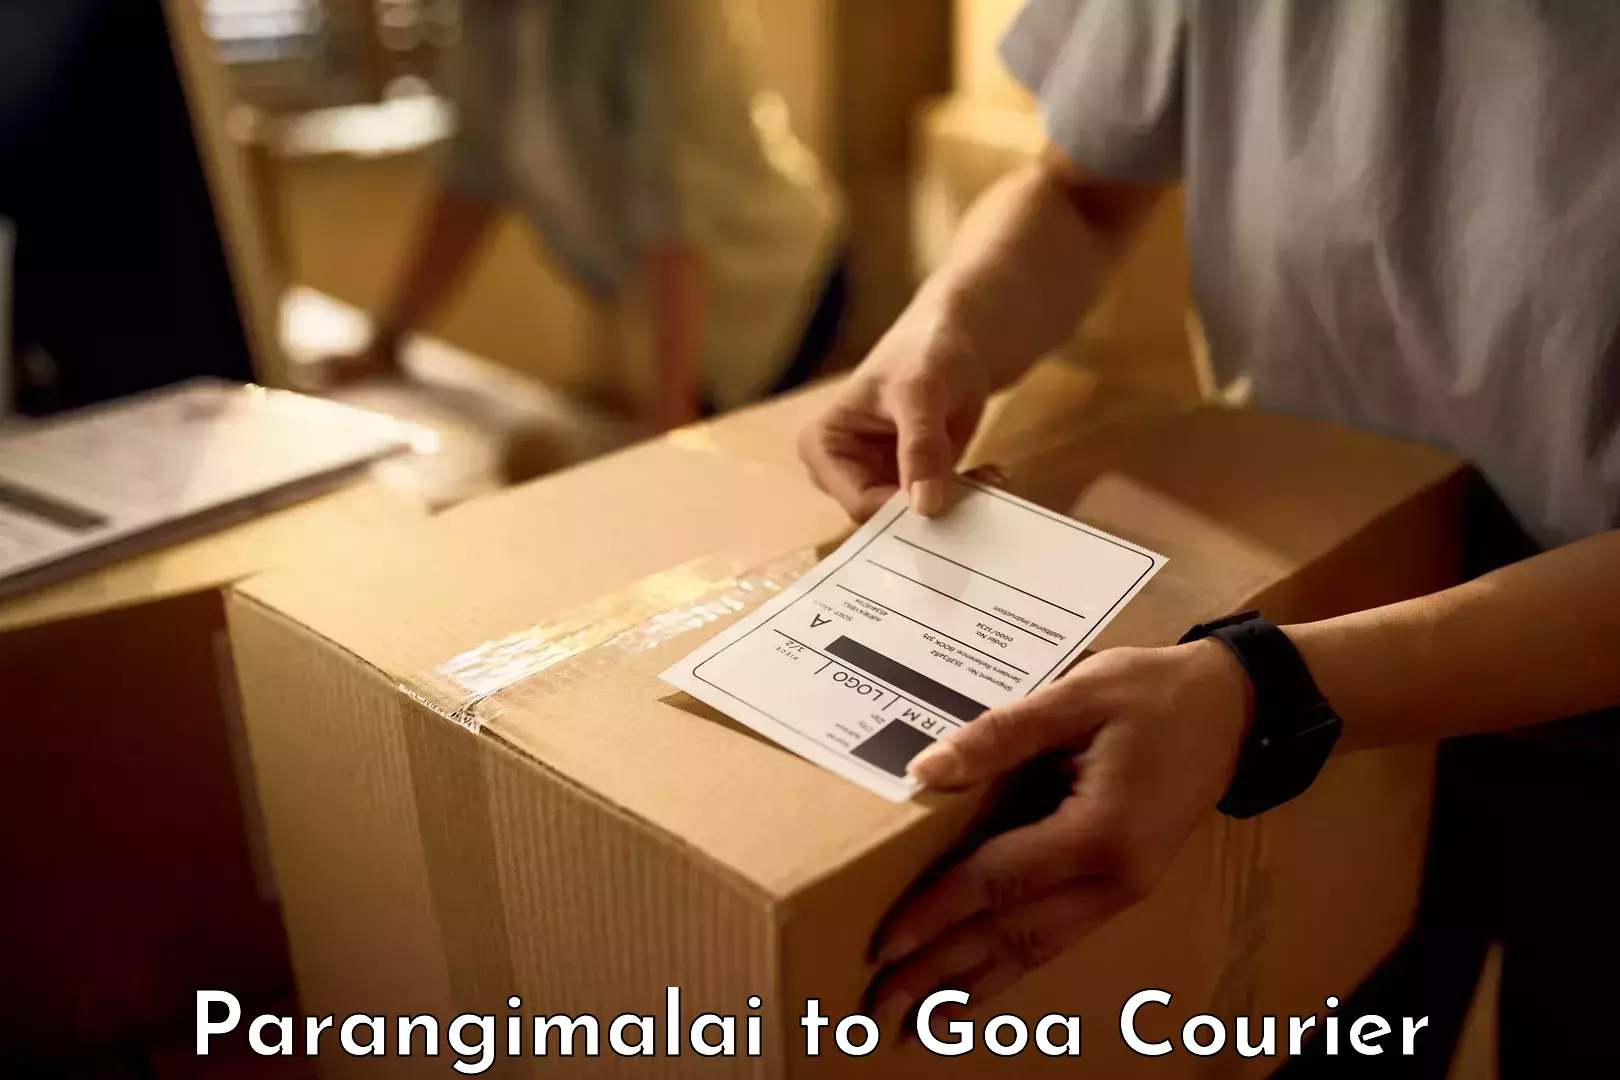 Baggage transport network Parangimalai to Margao